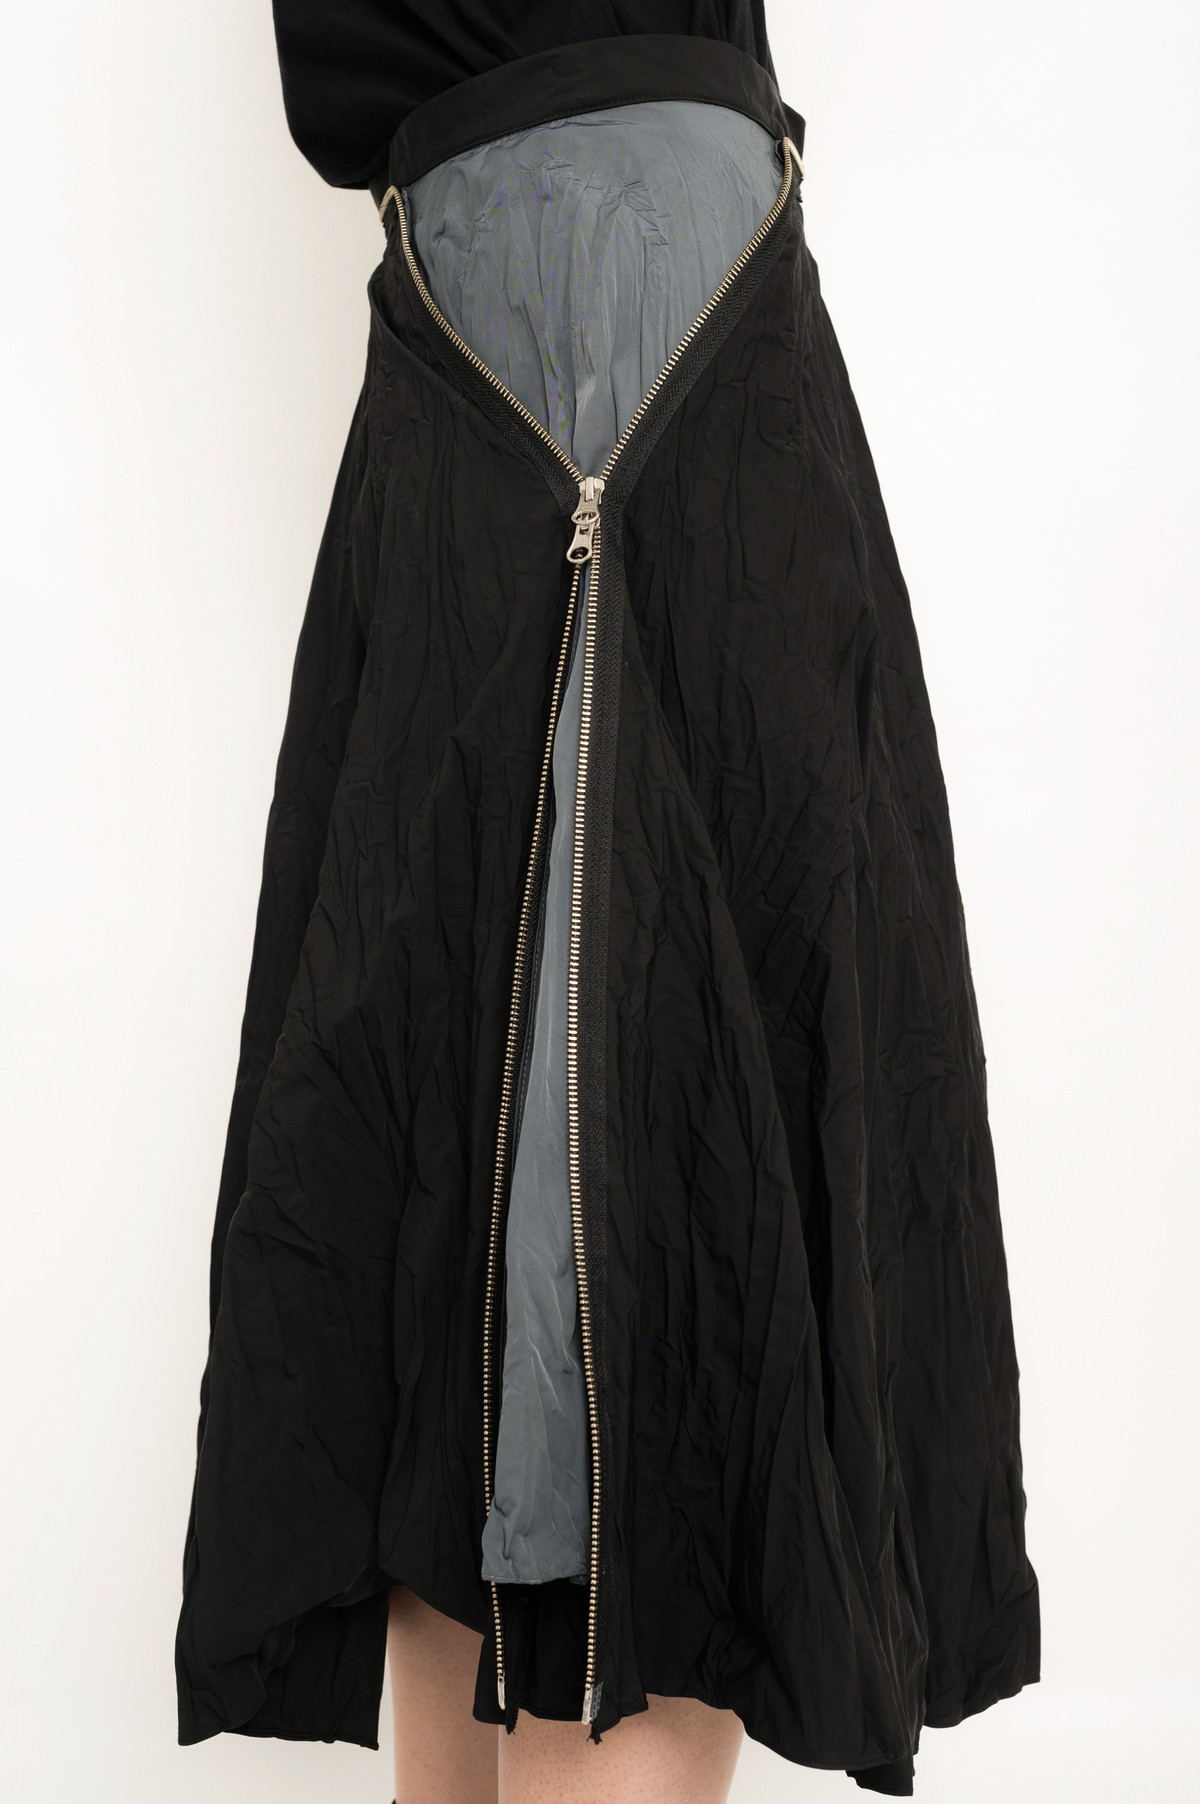 saia godê amassada com detalhe constrastante | crinkled flared skirt with contrasting detail